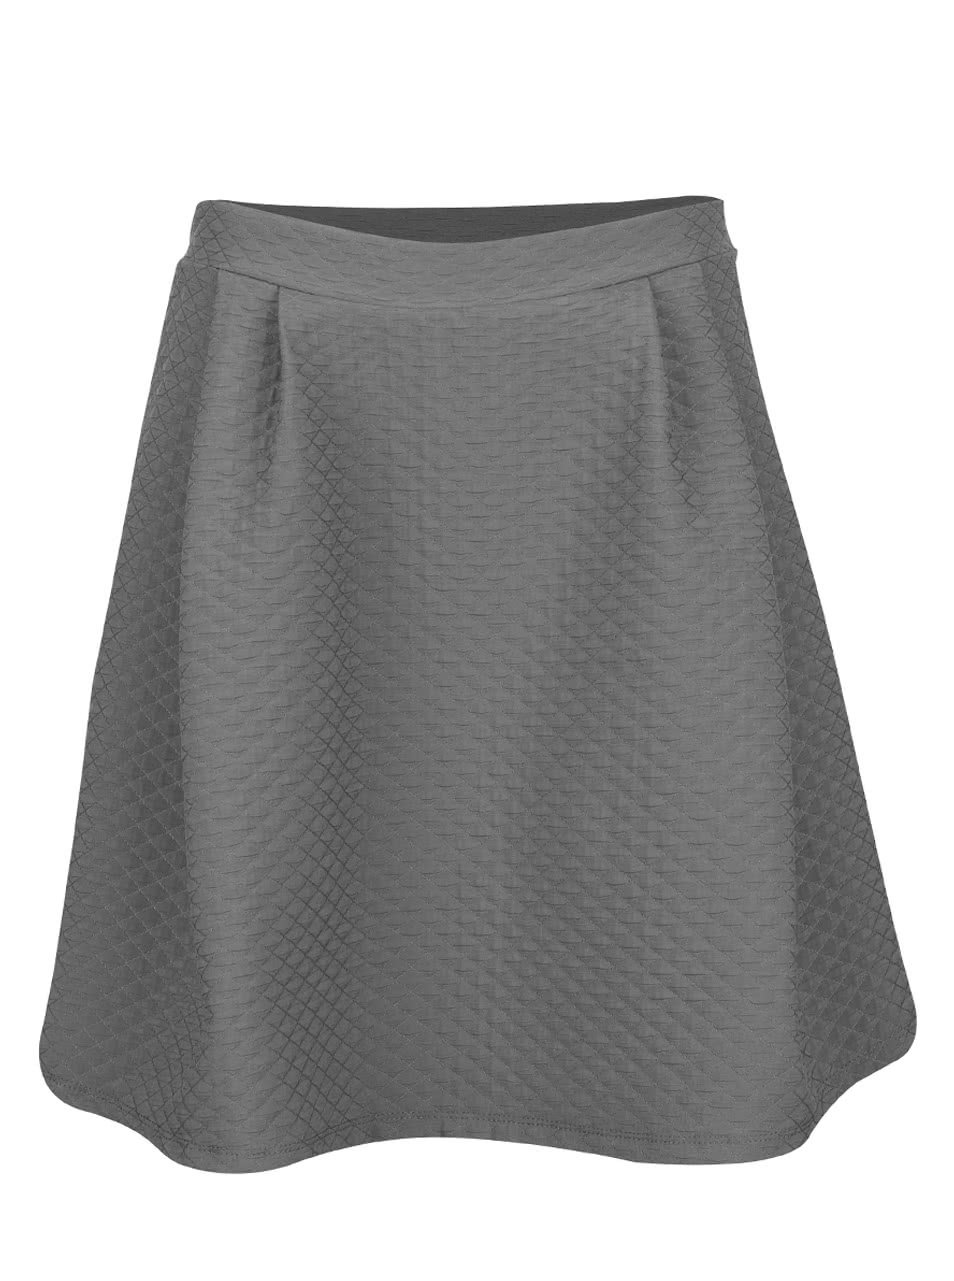 Šedá překládaná sukně s jemným plastickým vzorem VILA Mounta